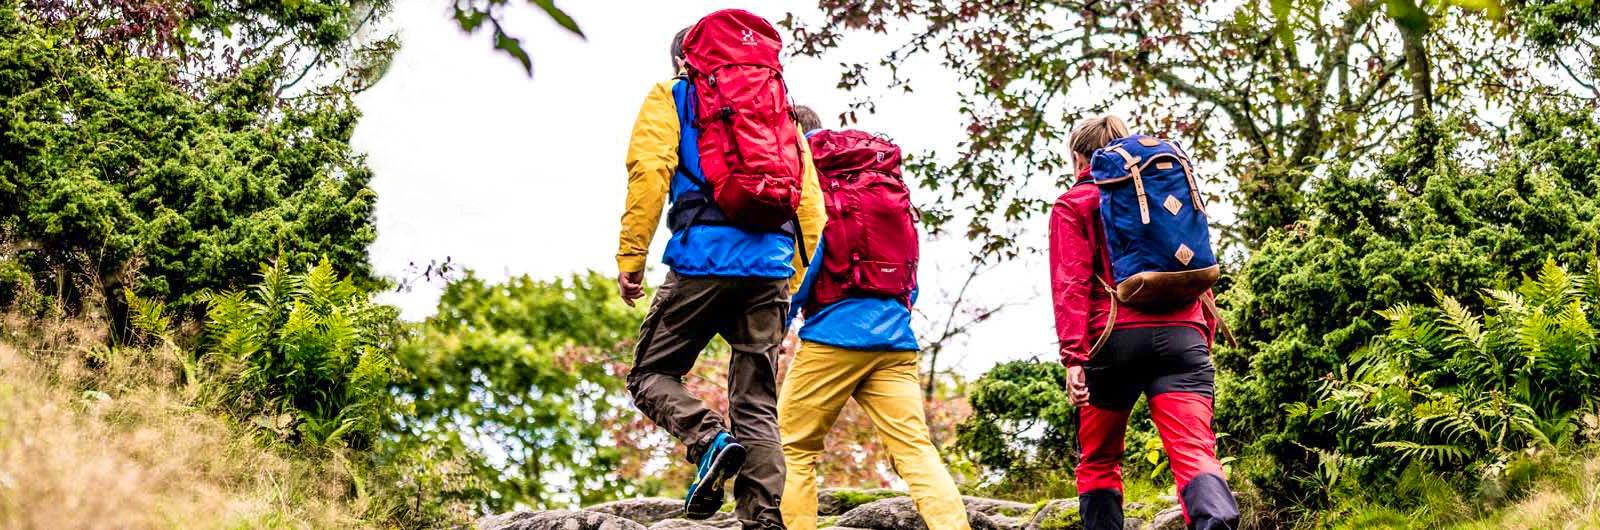 Grupp vandrare med ryggsäckar